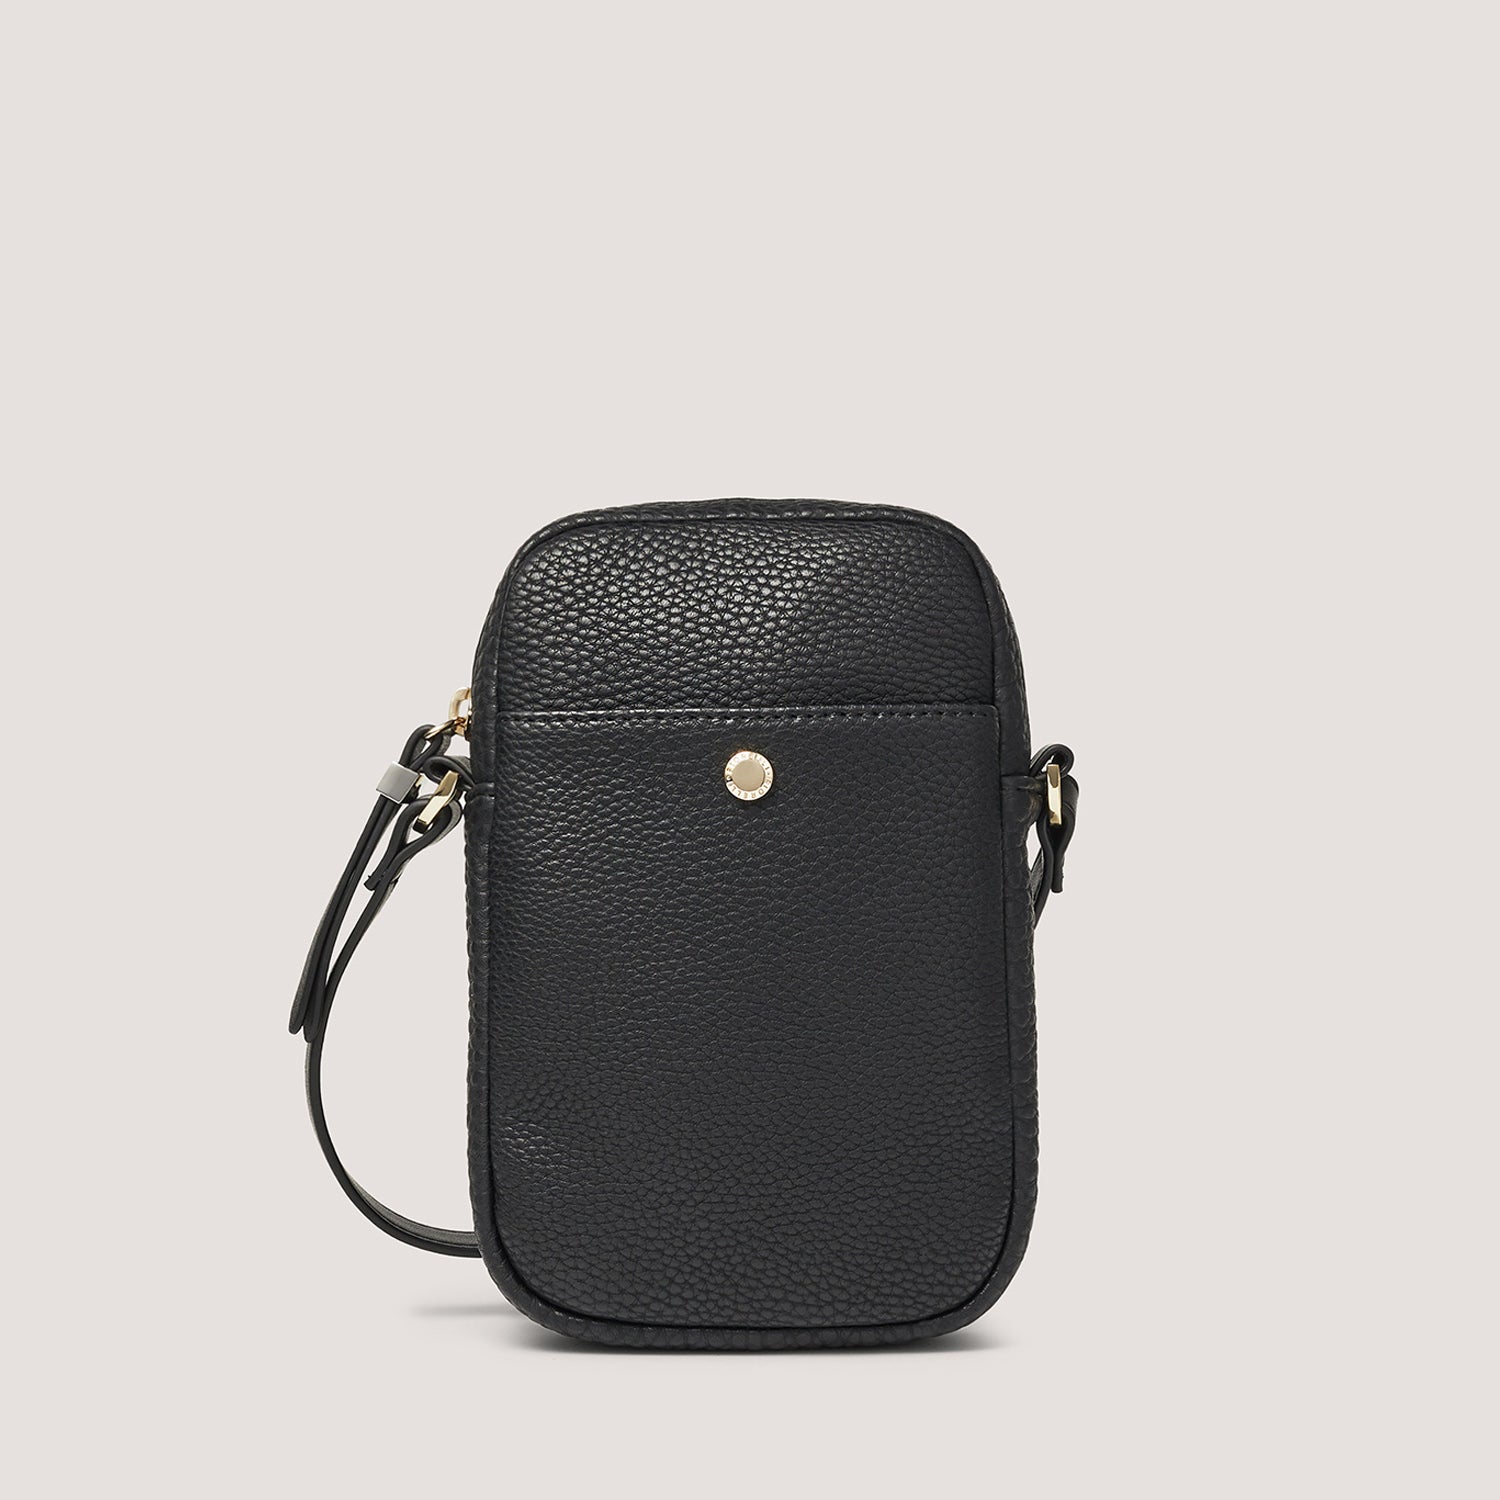 Paris | Black Phone Bags | Fiorelli.com